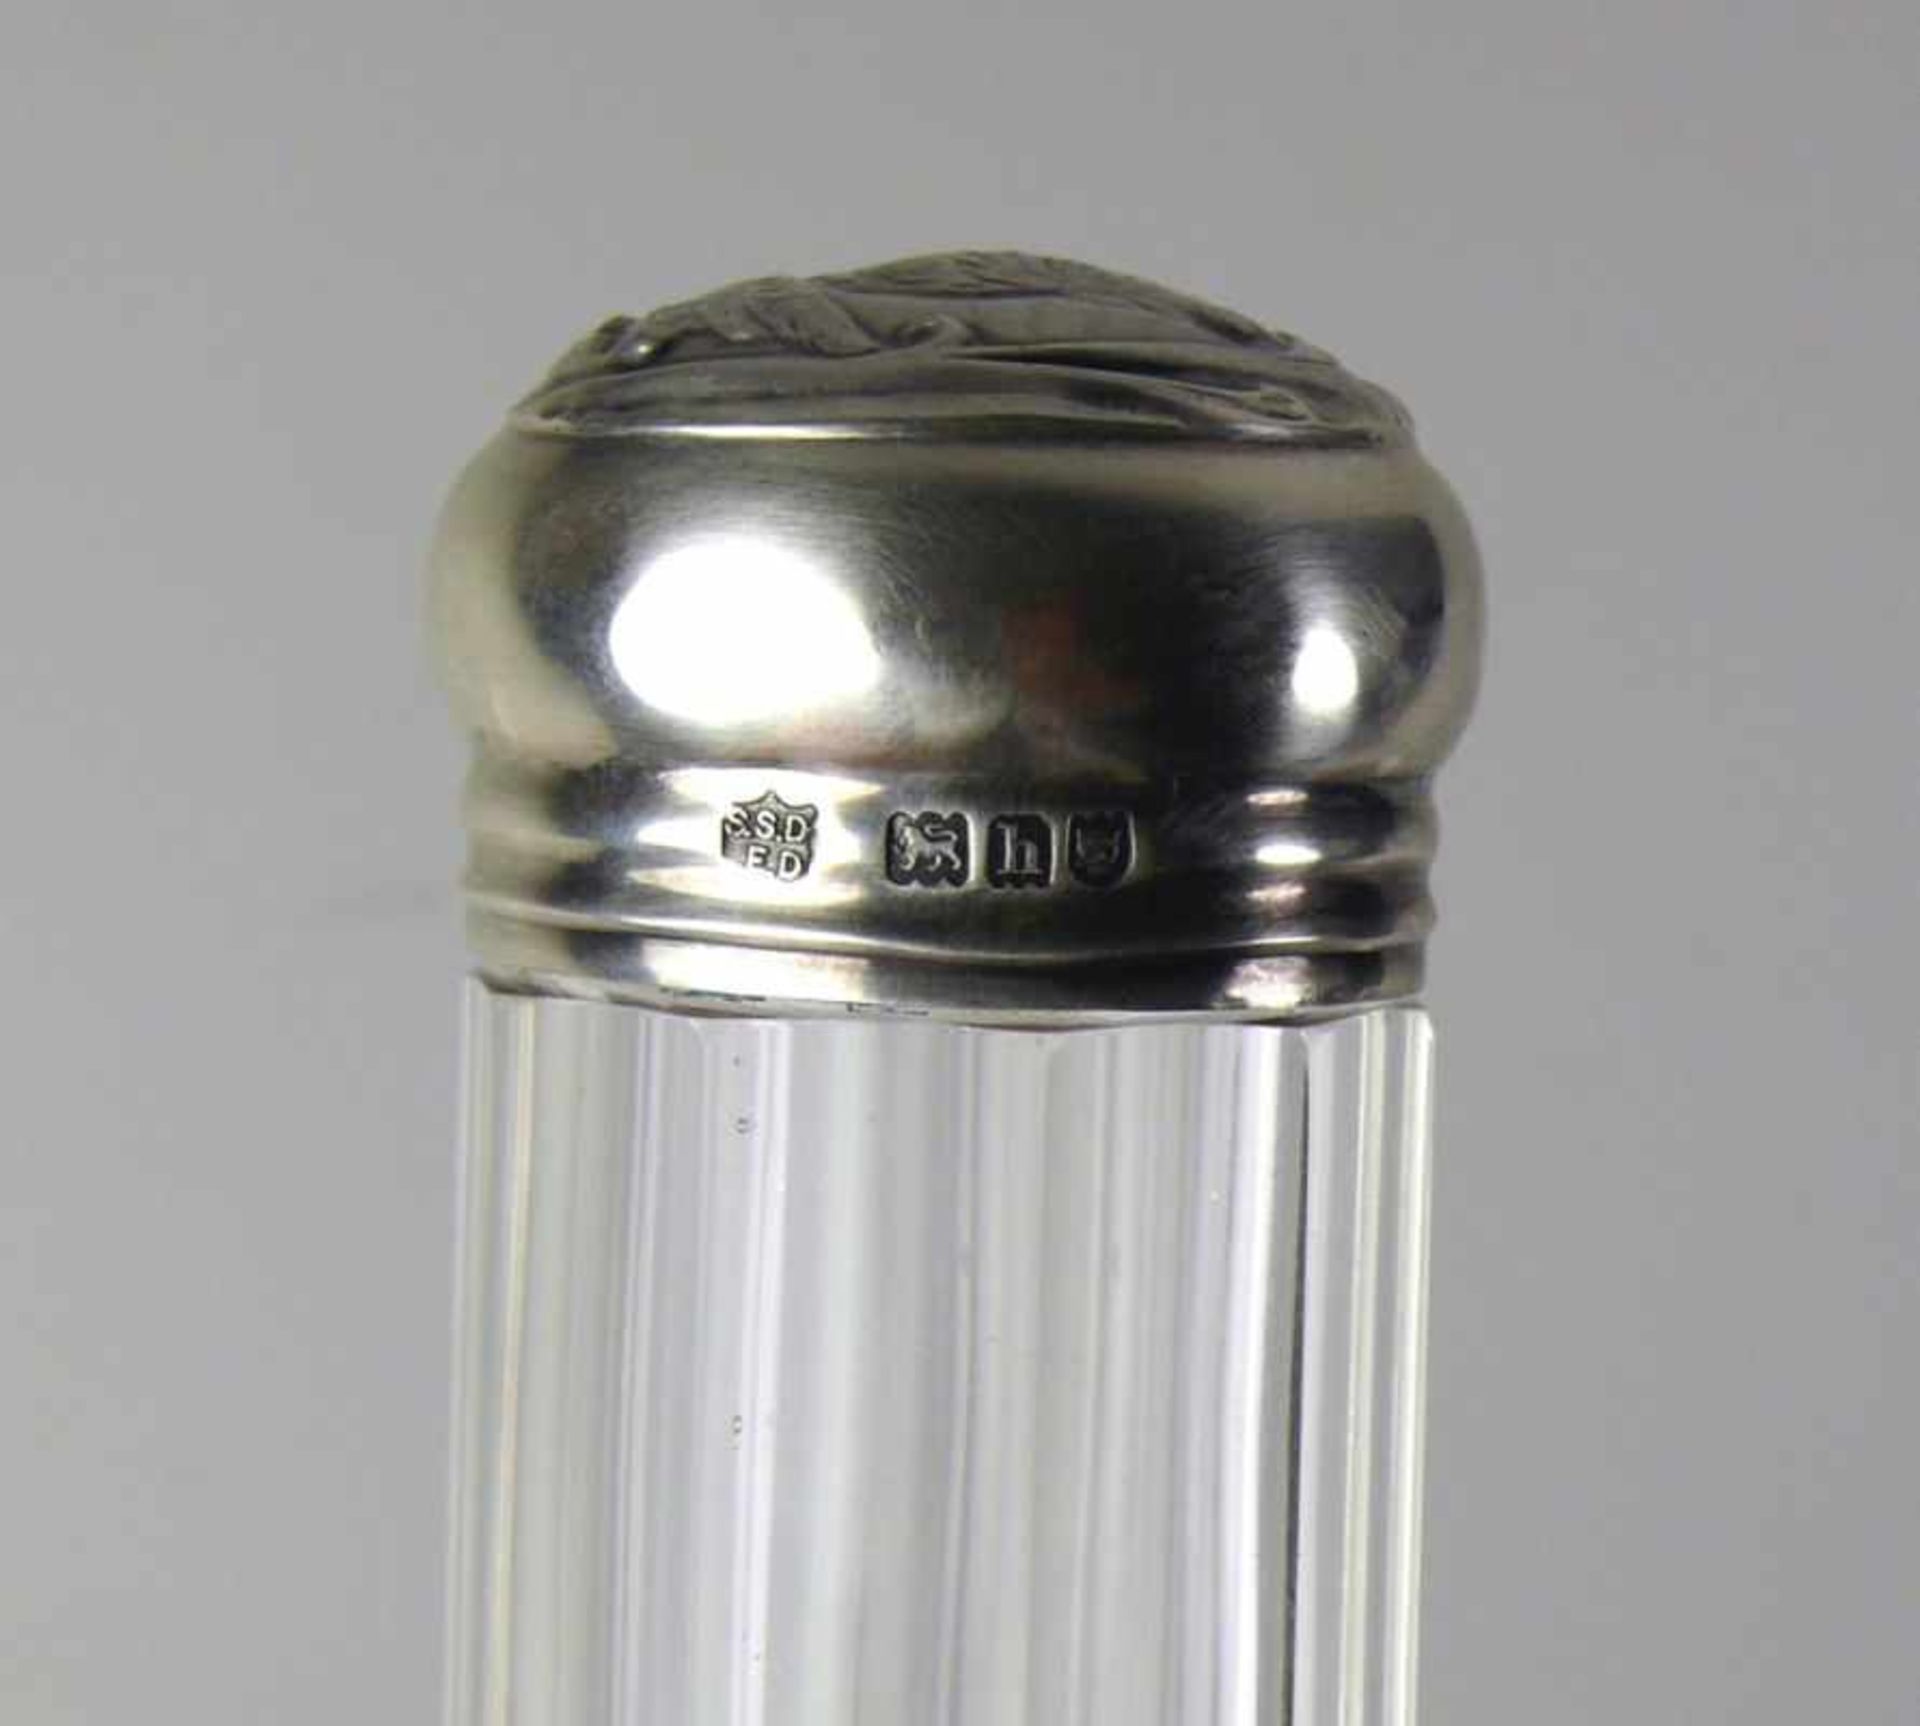 Deckelgefäß (London, 1903) zyl., geschliffener Glaskorpus; gewölbter Deckel in Sterlingsilber 925; - Bild 4 aus 4